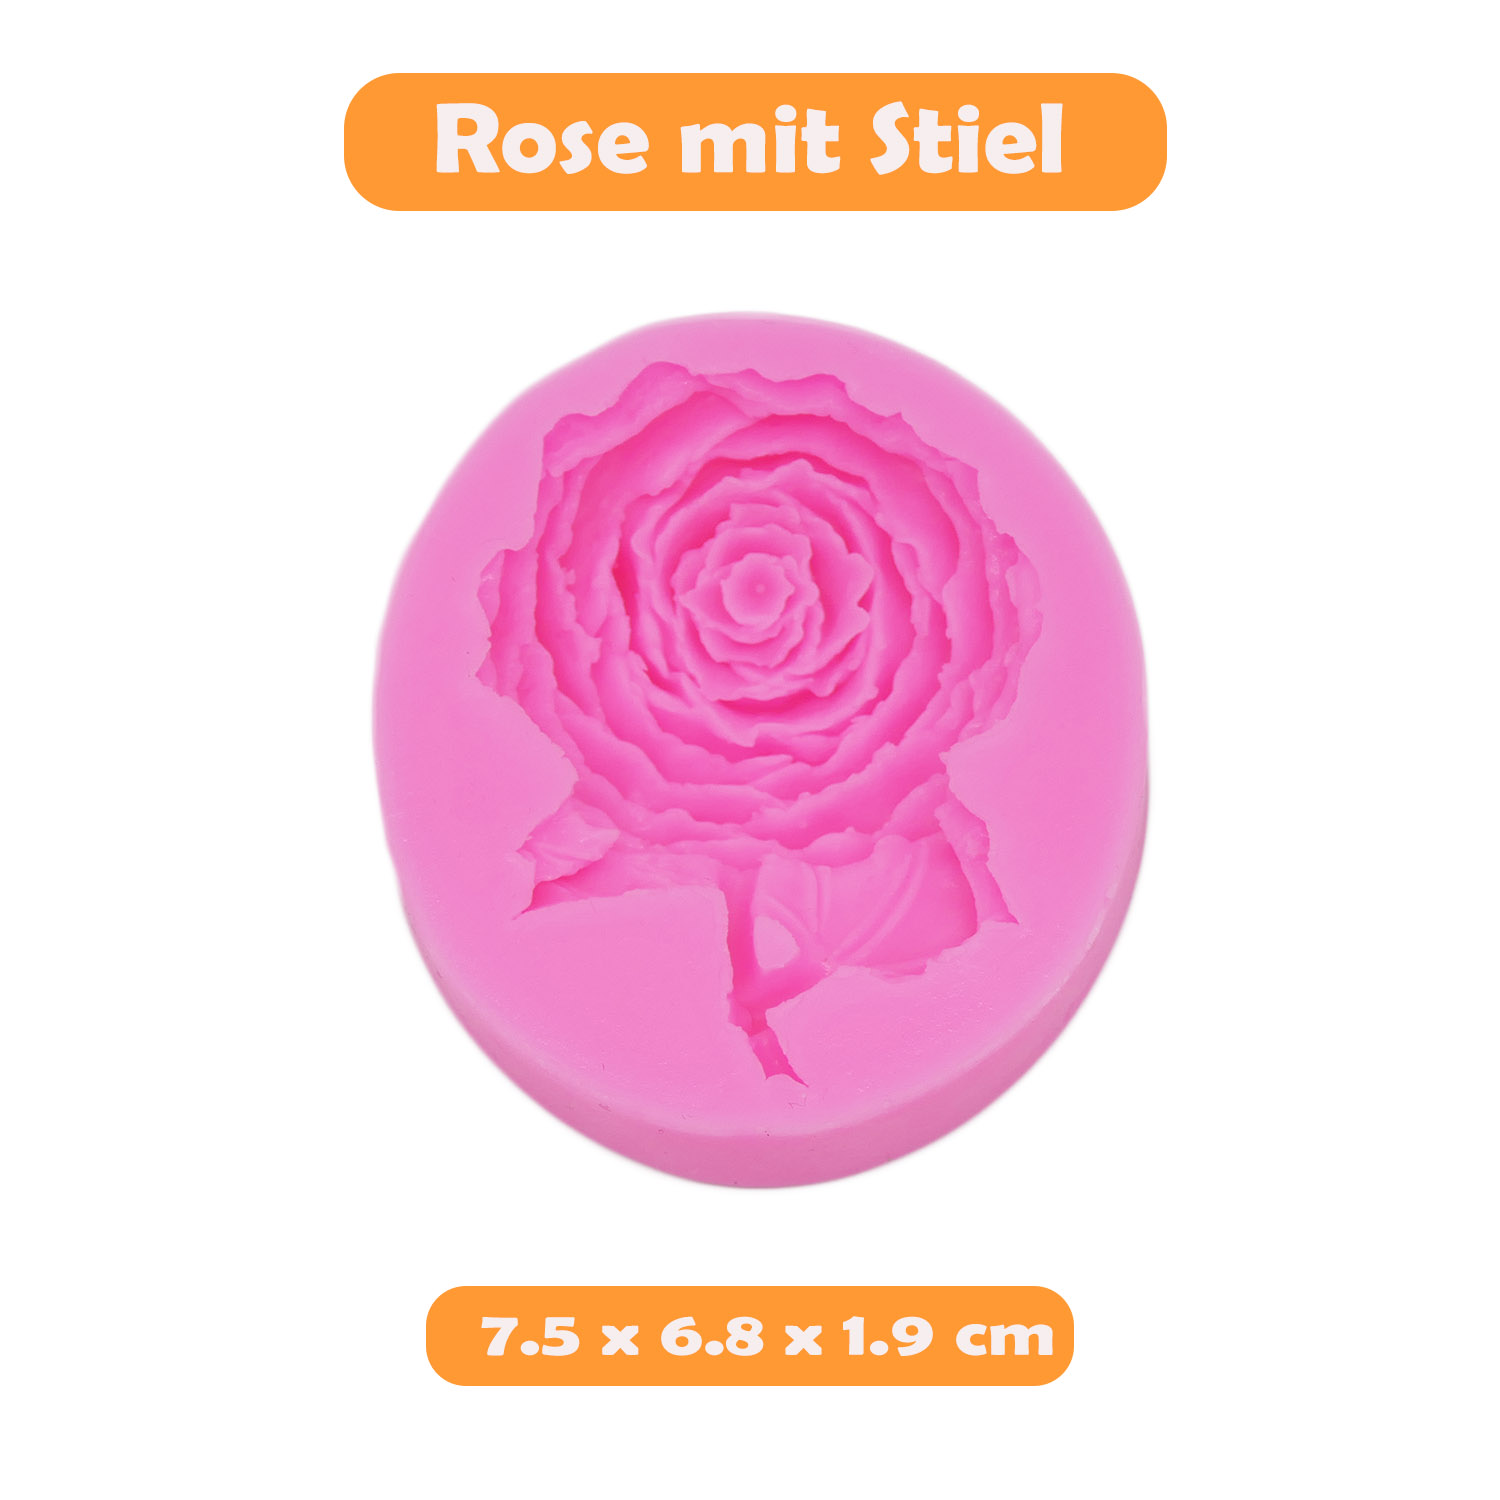 Vektenxi 3D Rose Form Silikon Kuchen Formen Zucker Formen Praline Kuchen Dekoration Werkzeuge Langlebig und Nützlich